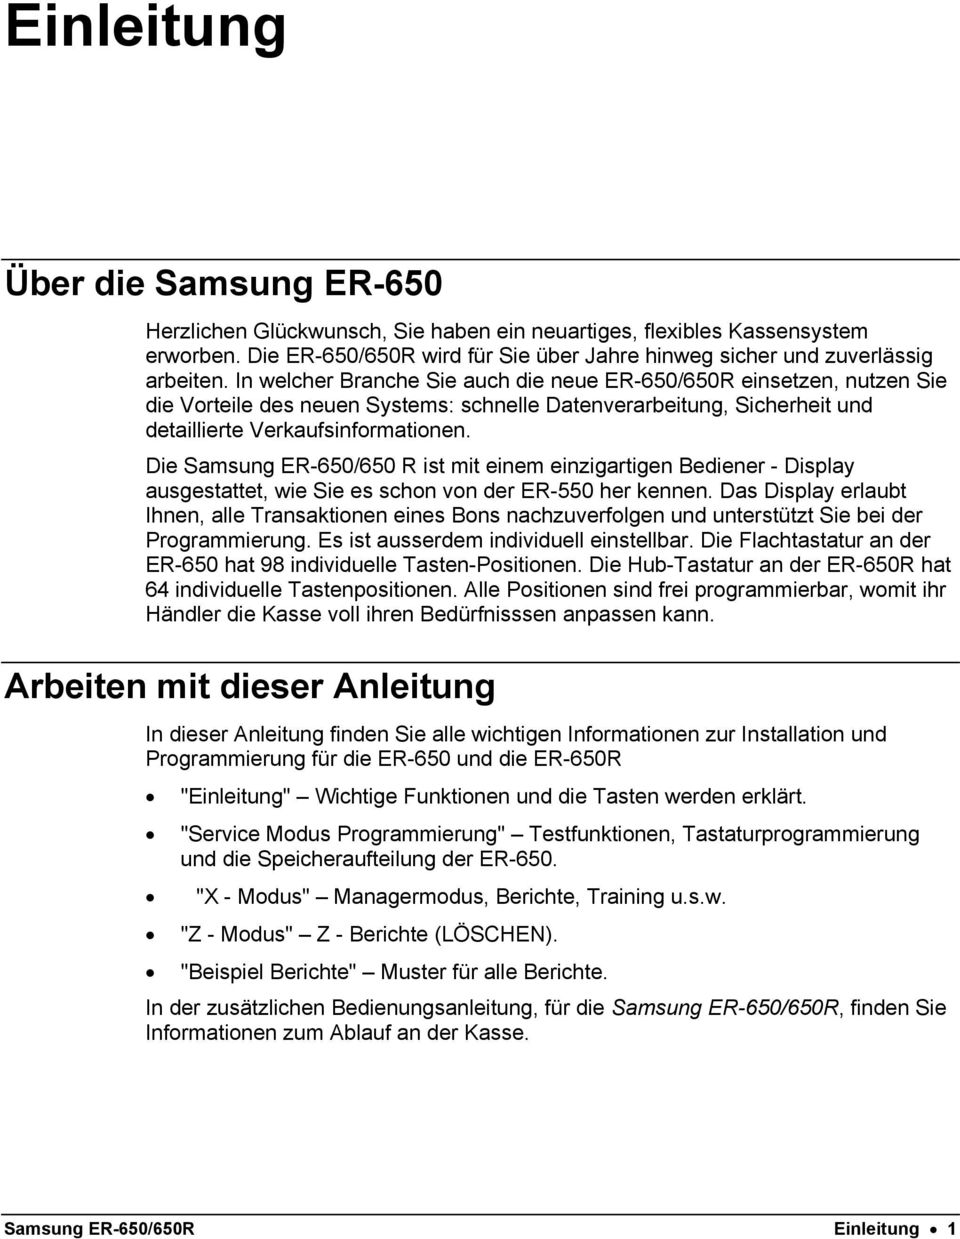 Die Samsung ER-650/650 R ist mit einem einzigartigen Bediener - Display ausgestattet, wie Sie es schon von der ER-550 her kennen.